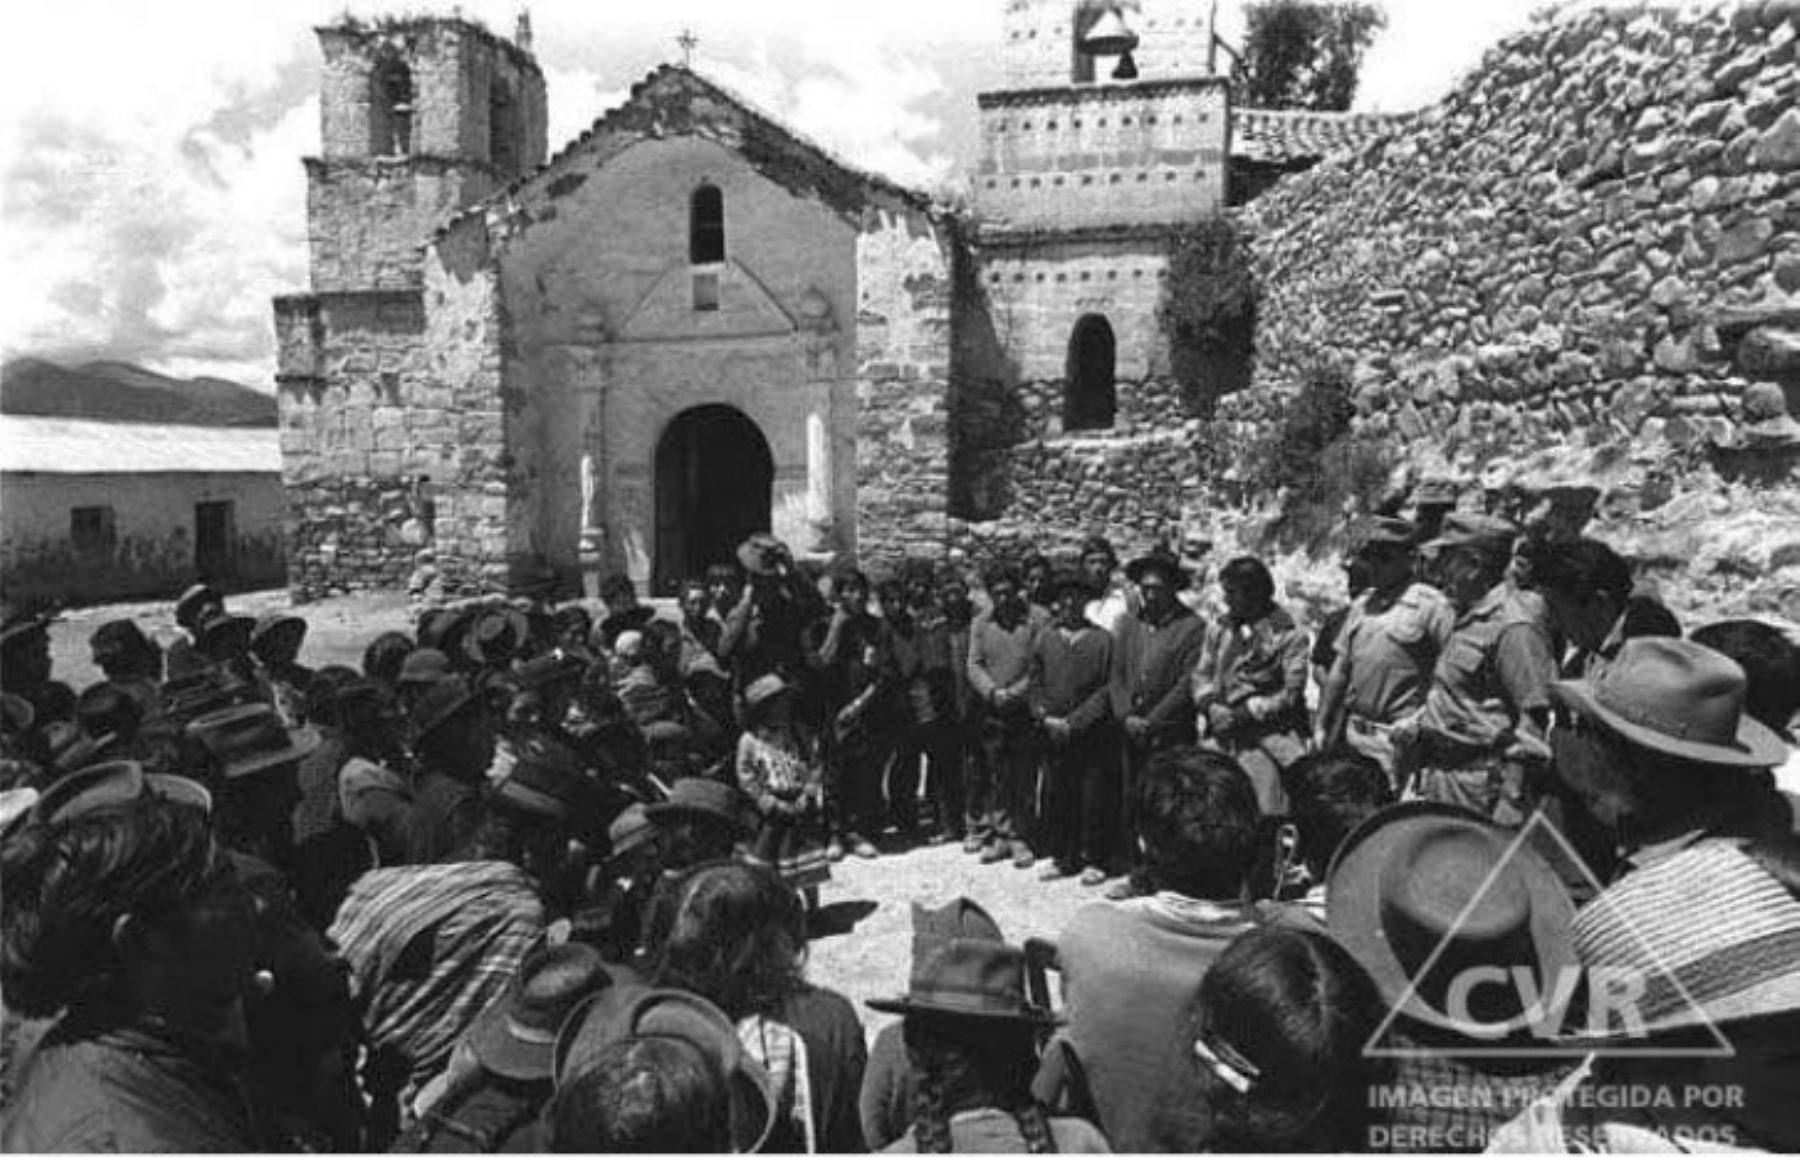 Finalmente, cerca de las 16:00 horas, llegaron a Lucanamarca. Reunieron a la población en la plaza del pueblo, separaron a los varones de las mujeres y niños, y masacraron a 19 varones hasta dejarlos sin vida.
Foto:CVR